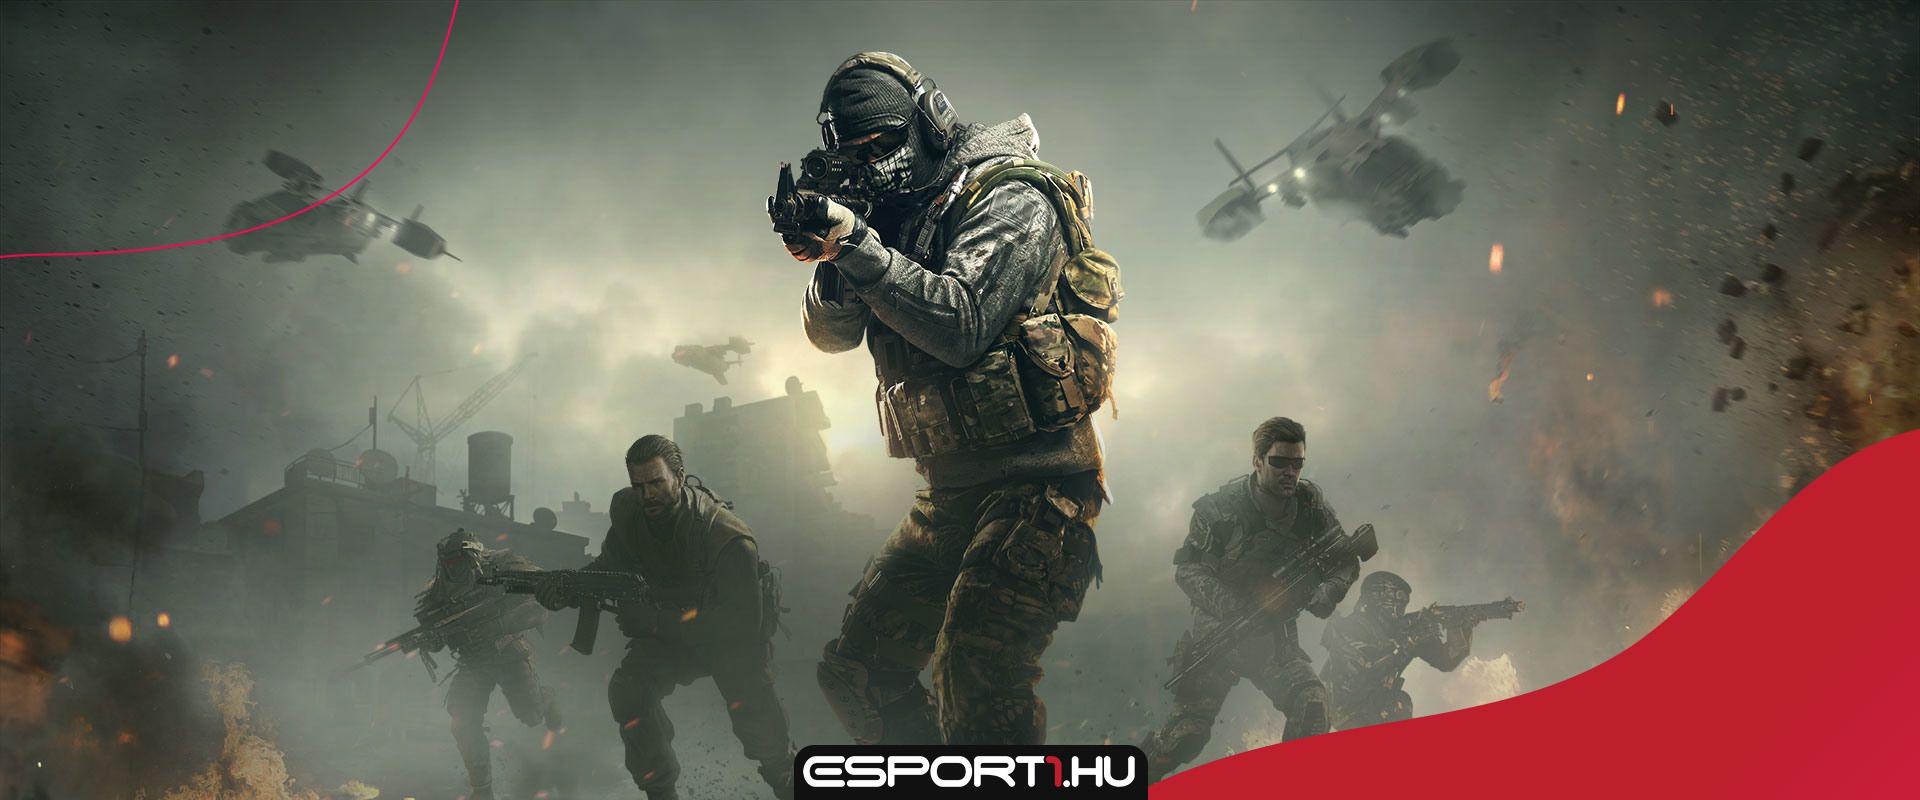 Hamarosan bemutathatják az új Call of Duty részt?